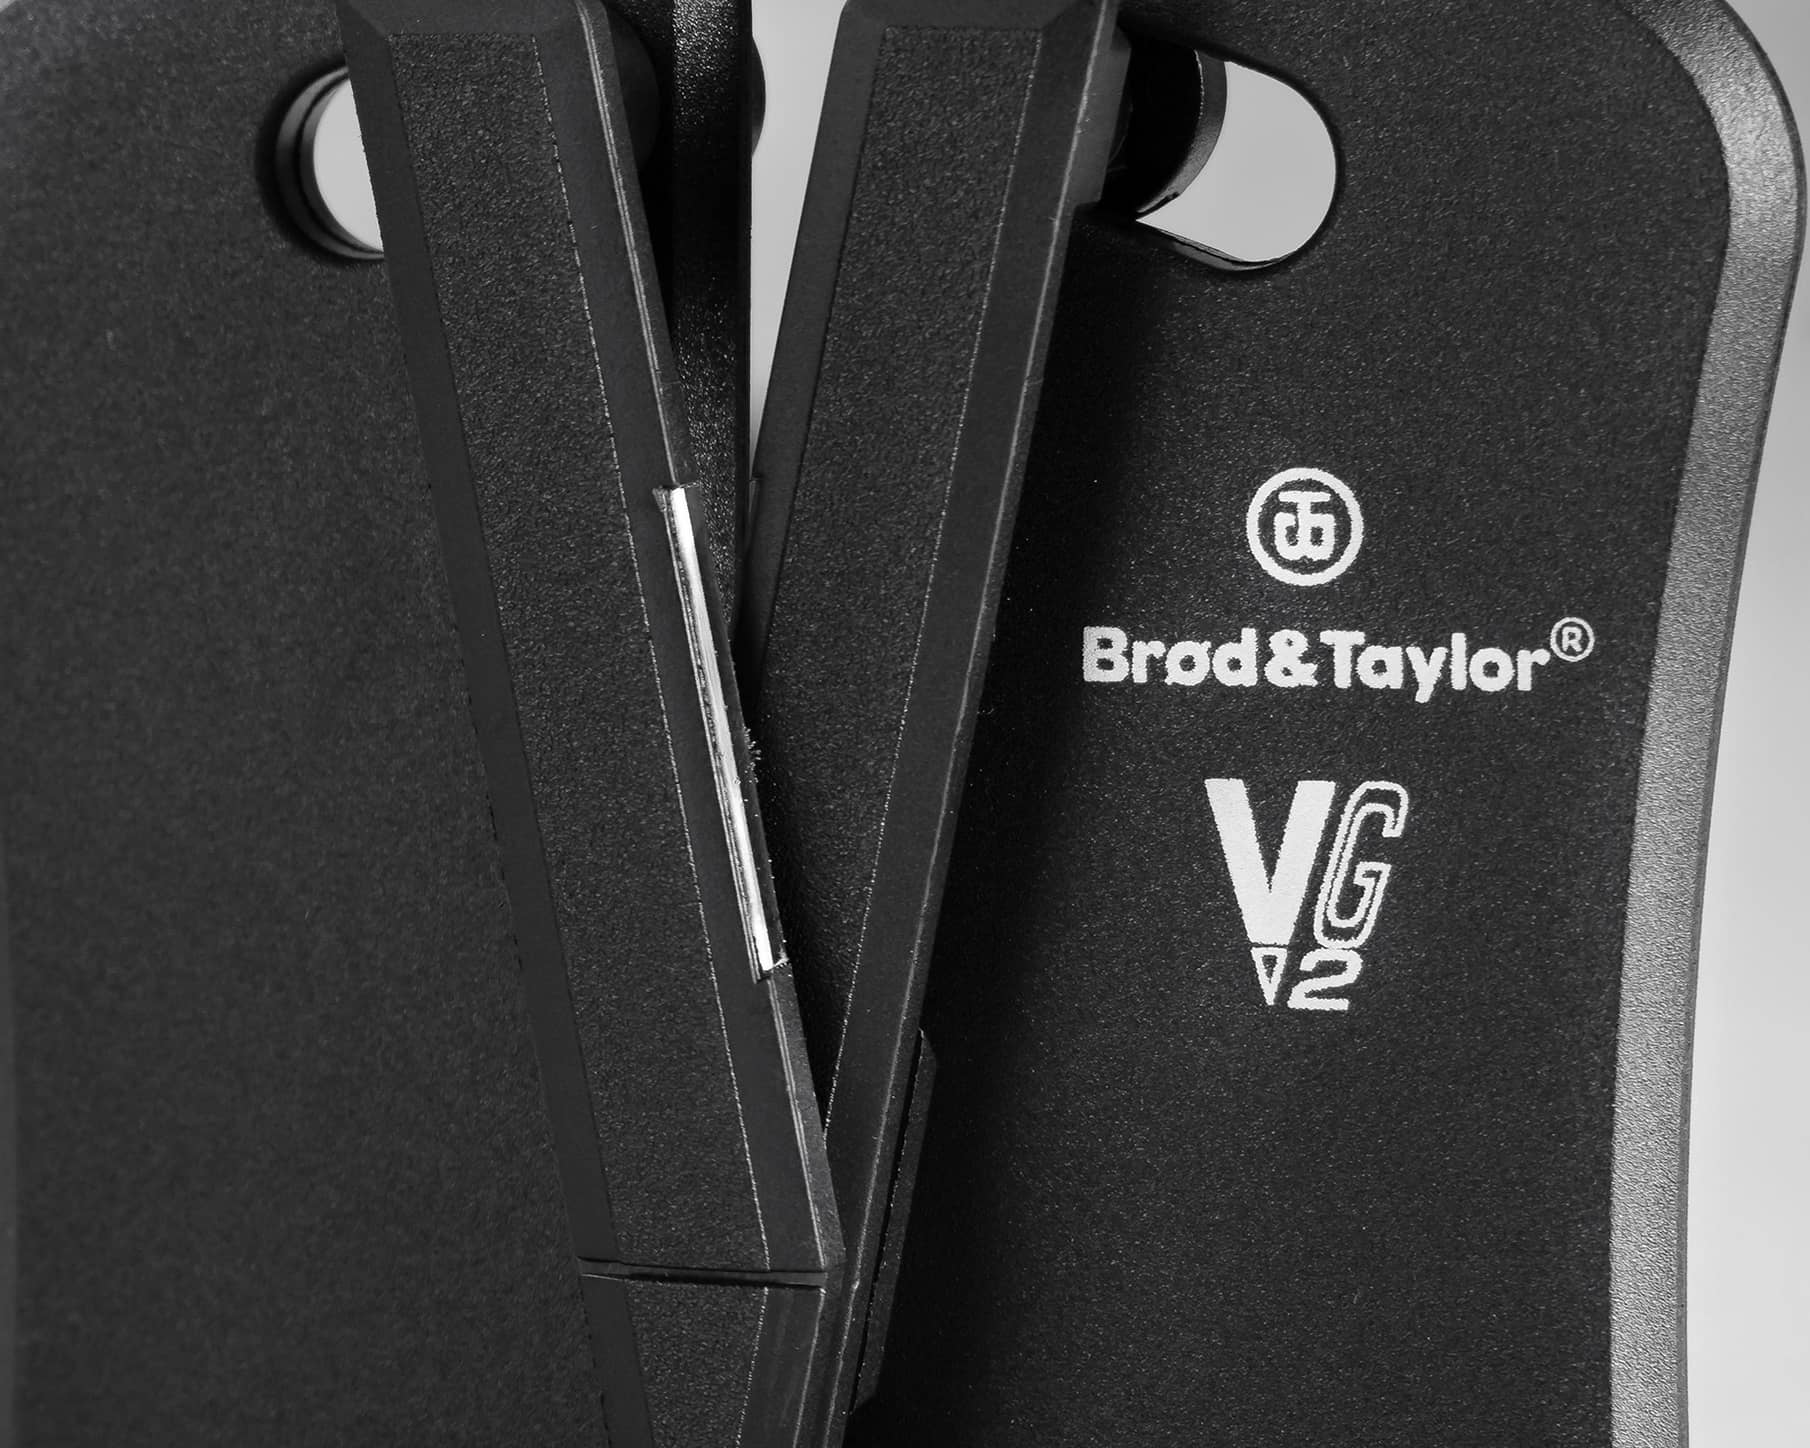 Brod & Taylor Classic VG2 Knife Sharpener